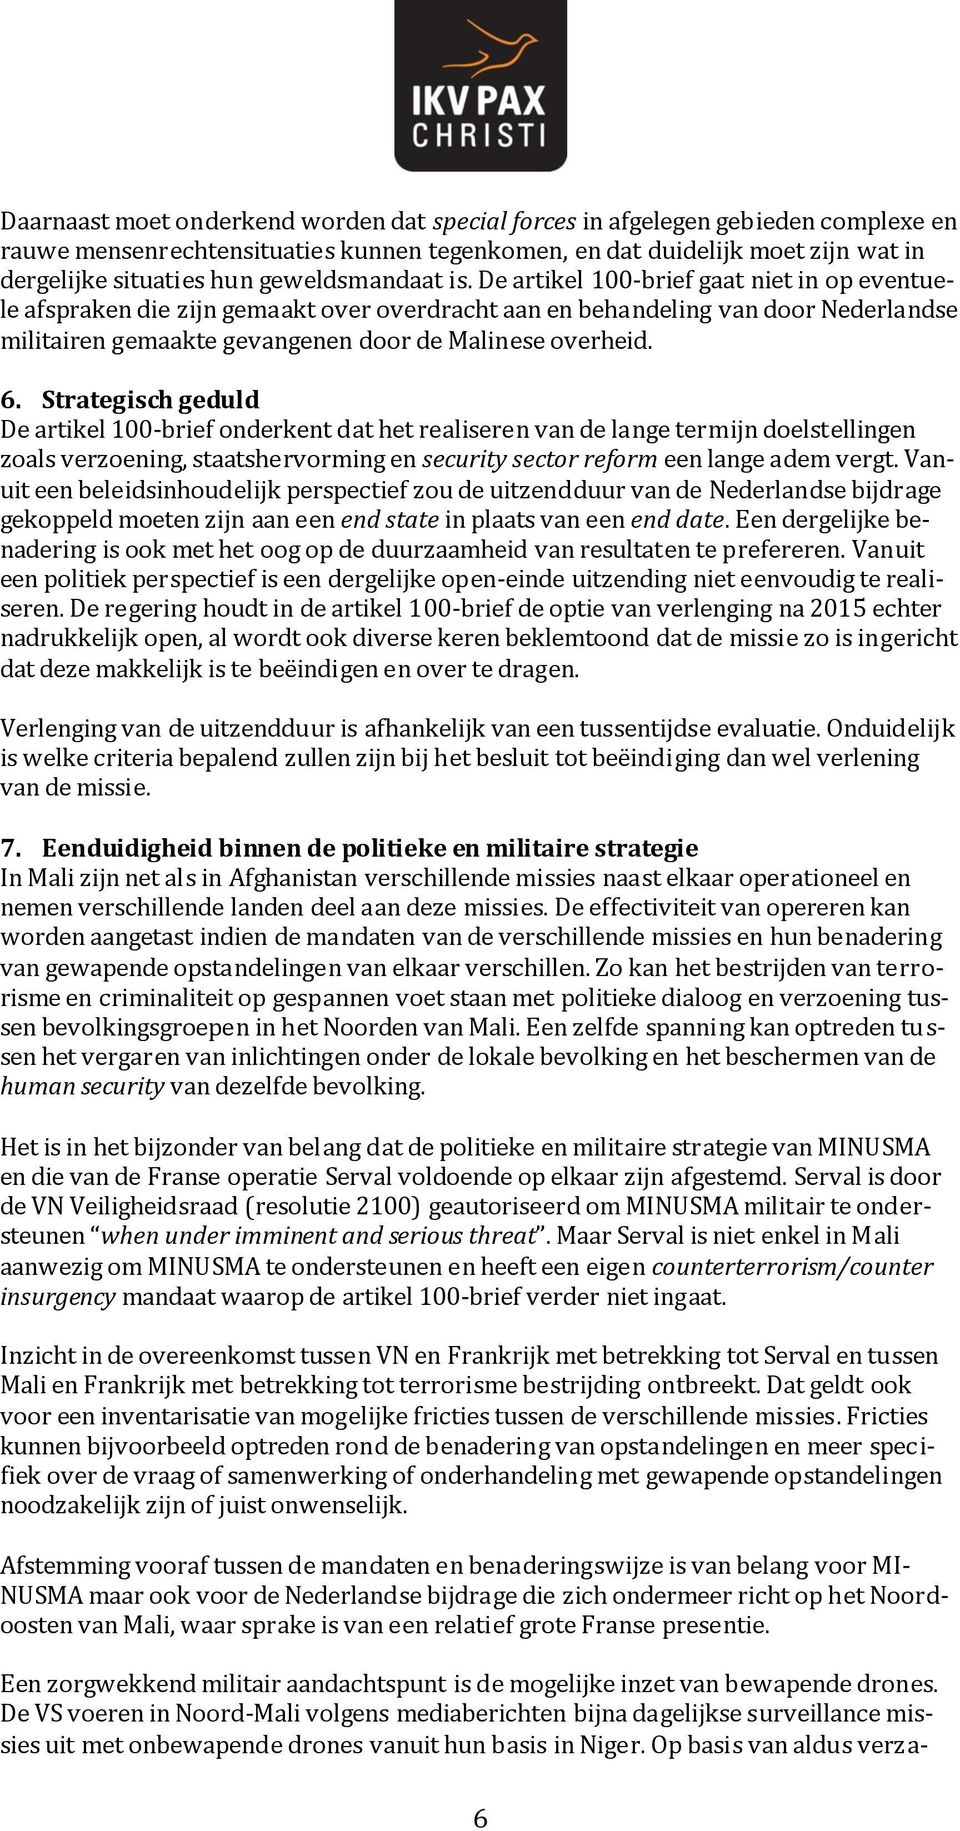 De artikel 100-brief gaat niet in op eventuele afspraken die zijn gemaakt over overdracht aan en behandeling van door Nederlandse militairen gemaakte gevangenen door de Malinese overheid. 6.